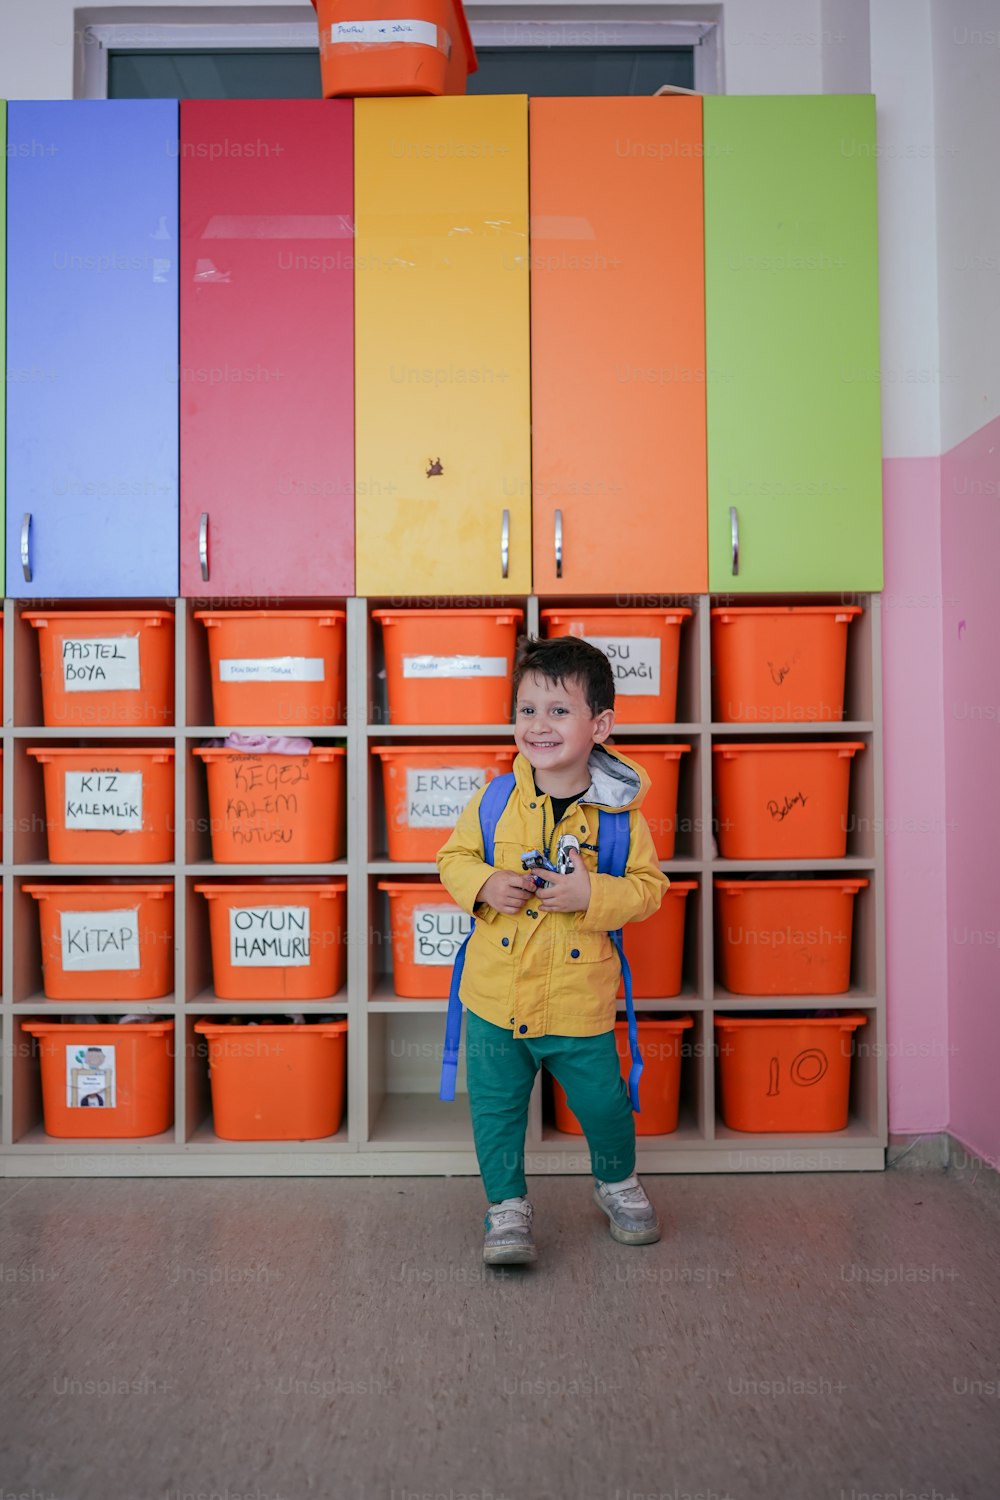 Un ragazzo in piedi davanti a un muro di bidoni colorati